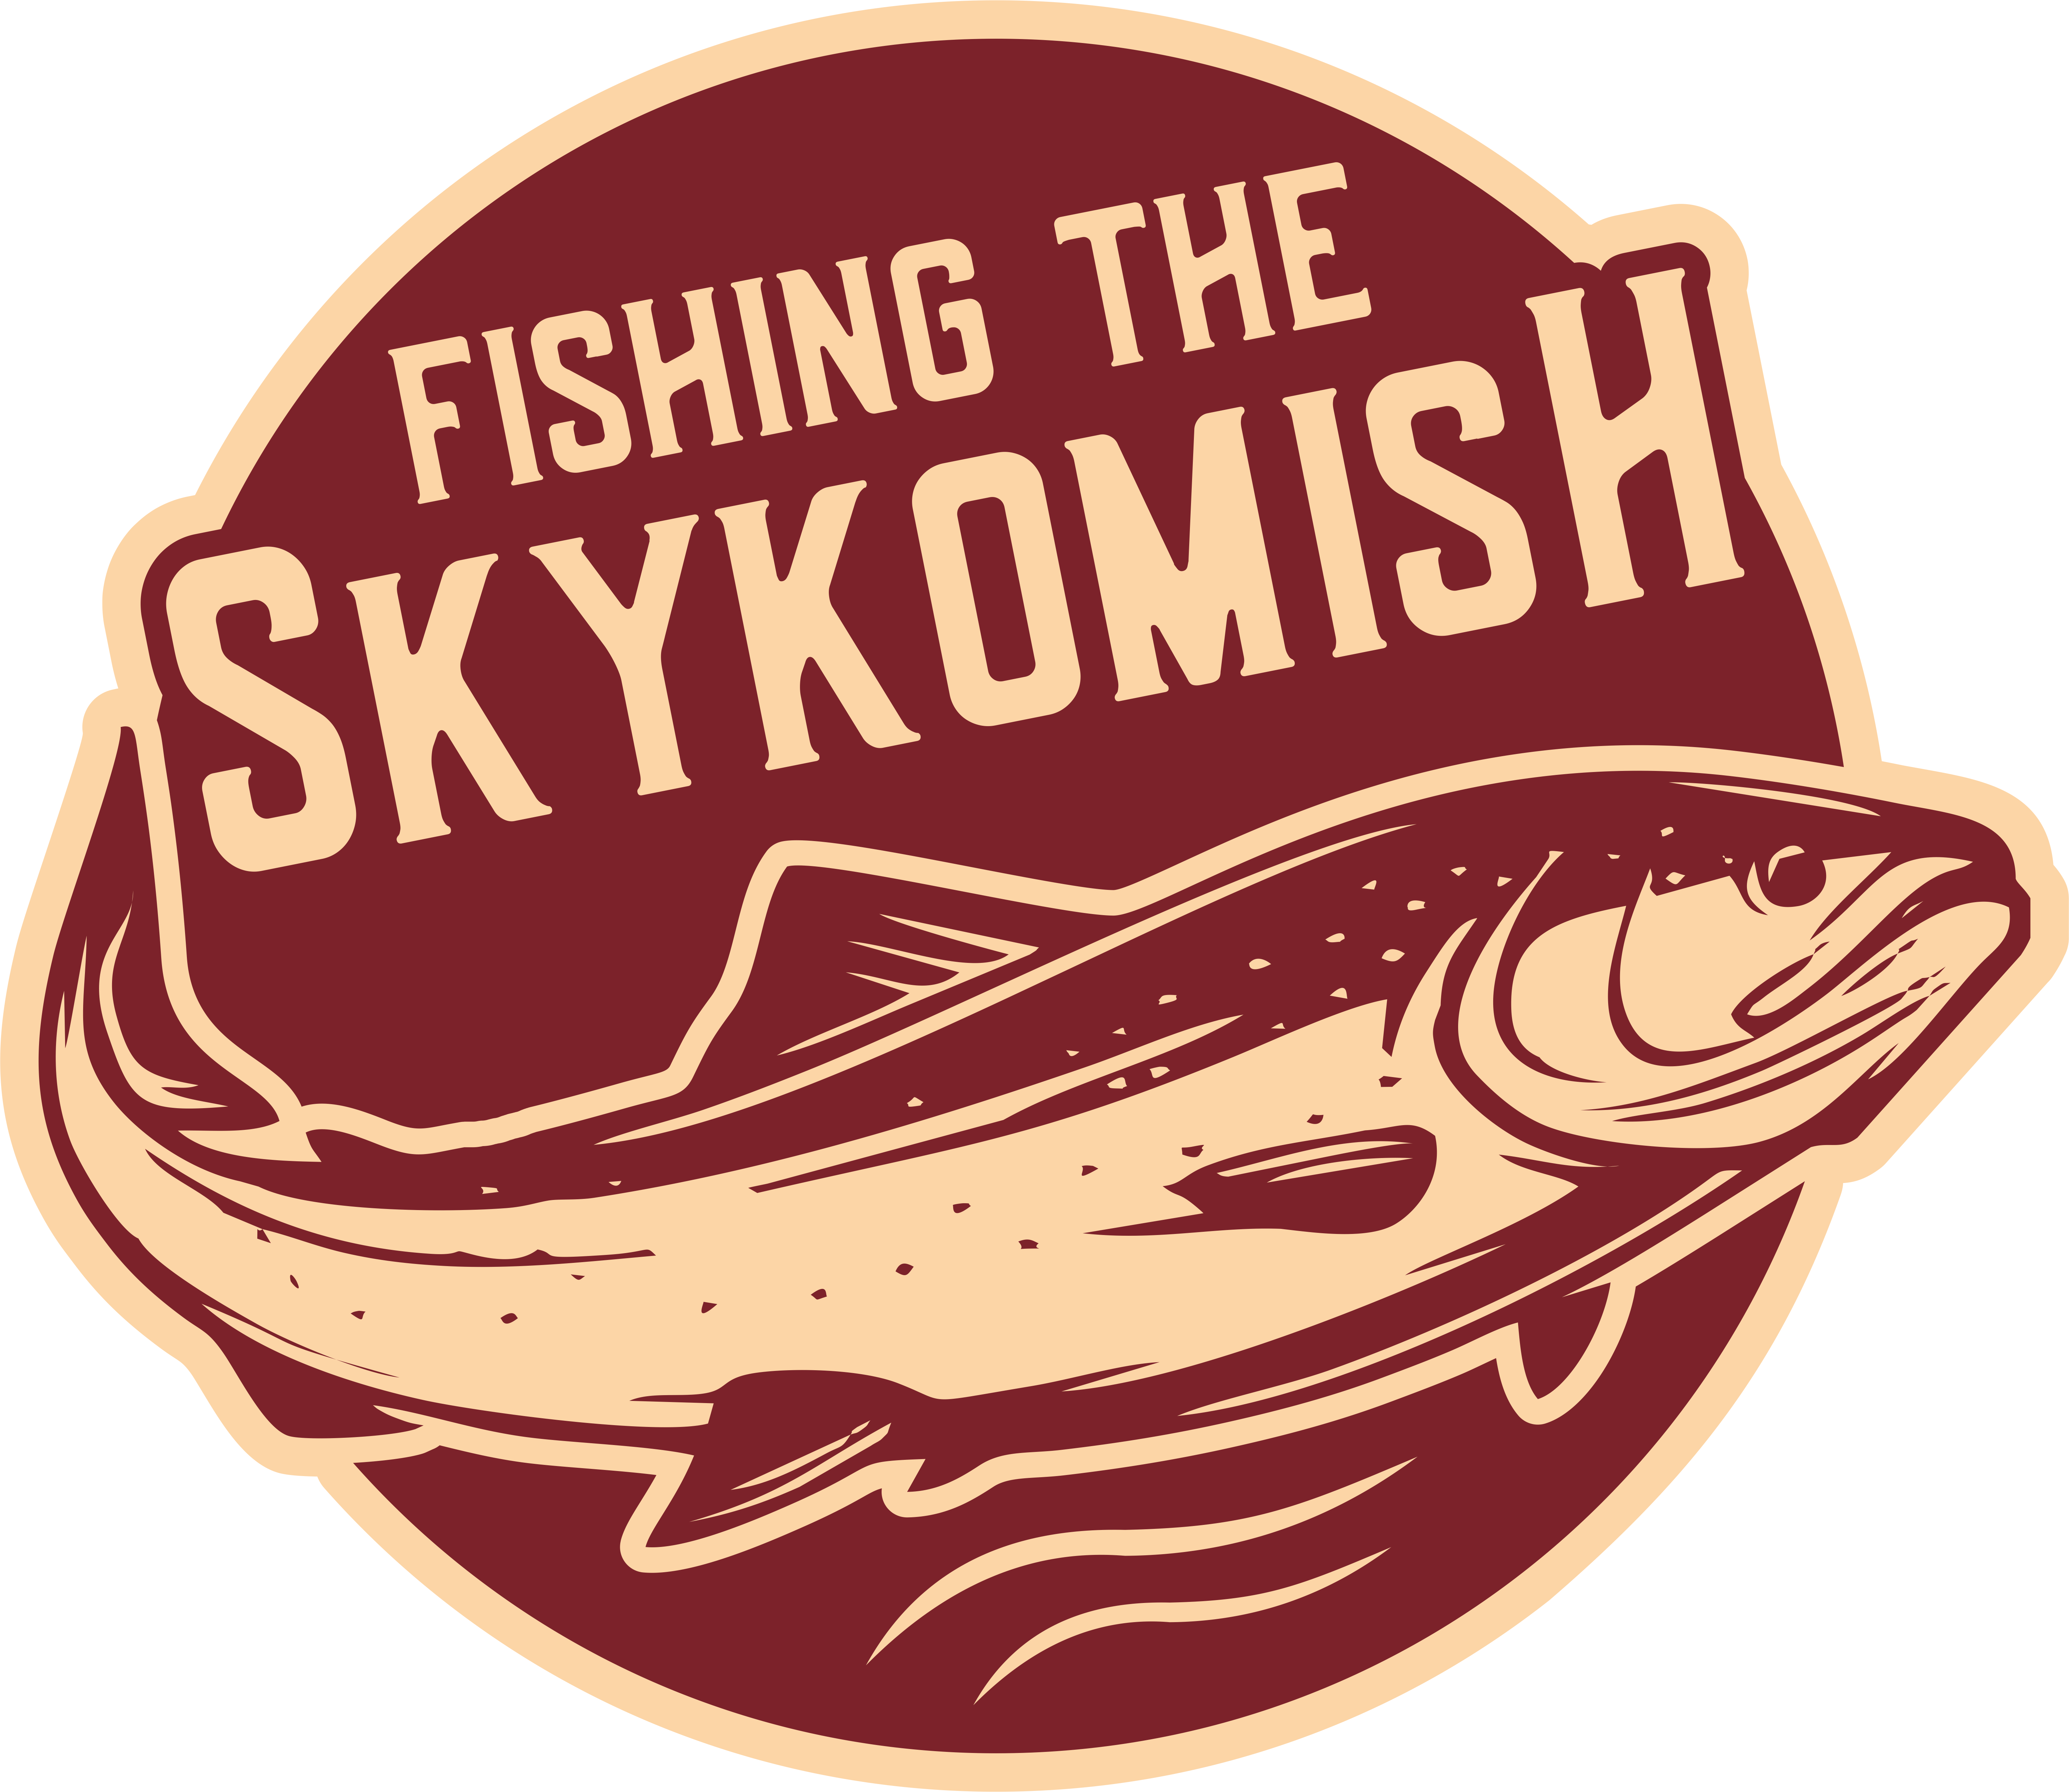 Fishing_The_Skykomish_1 - Fishing The Skykomish